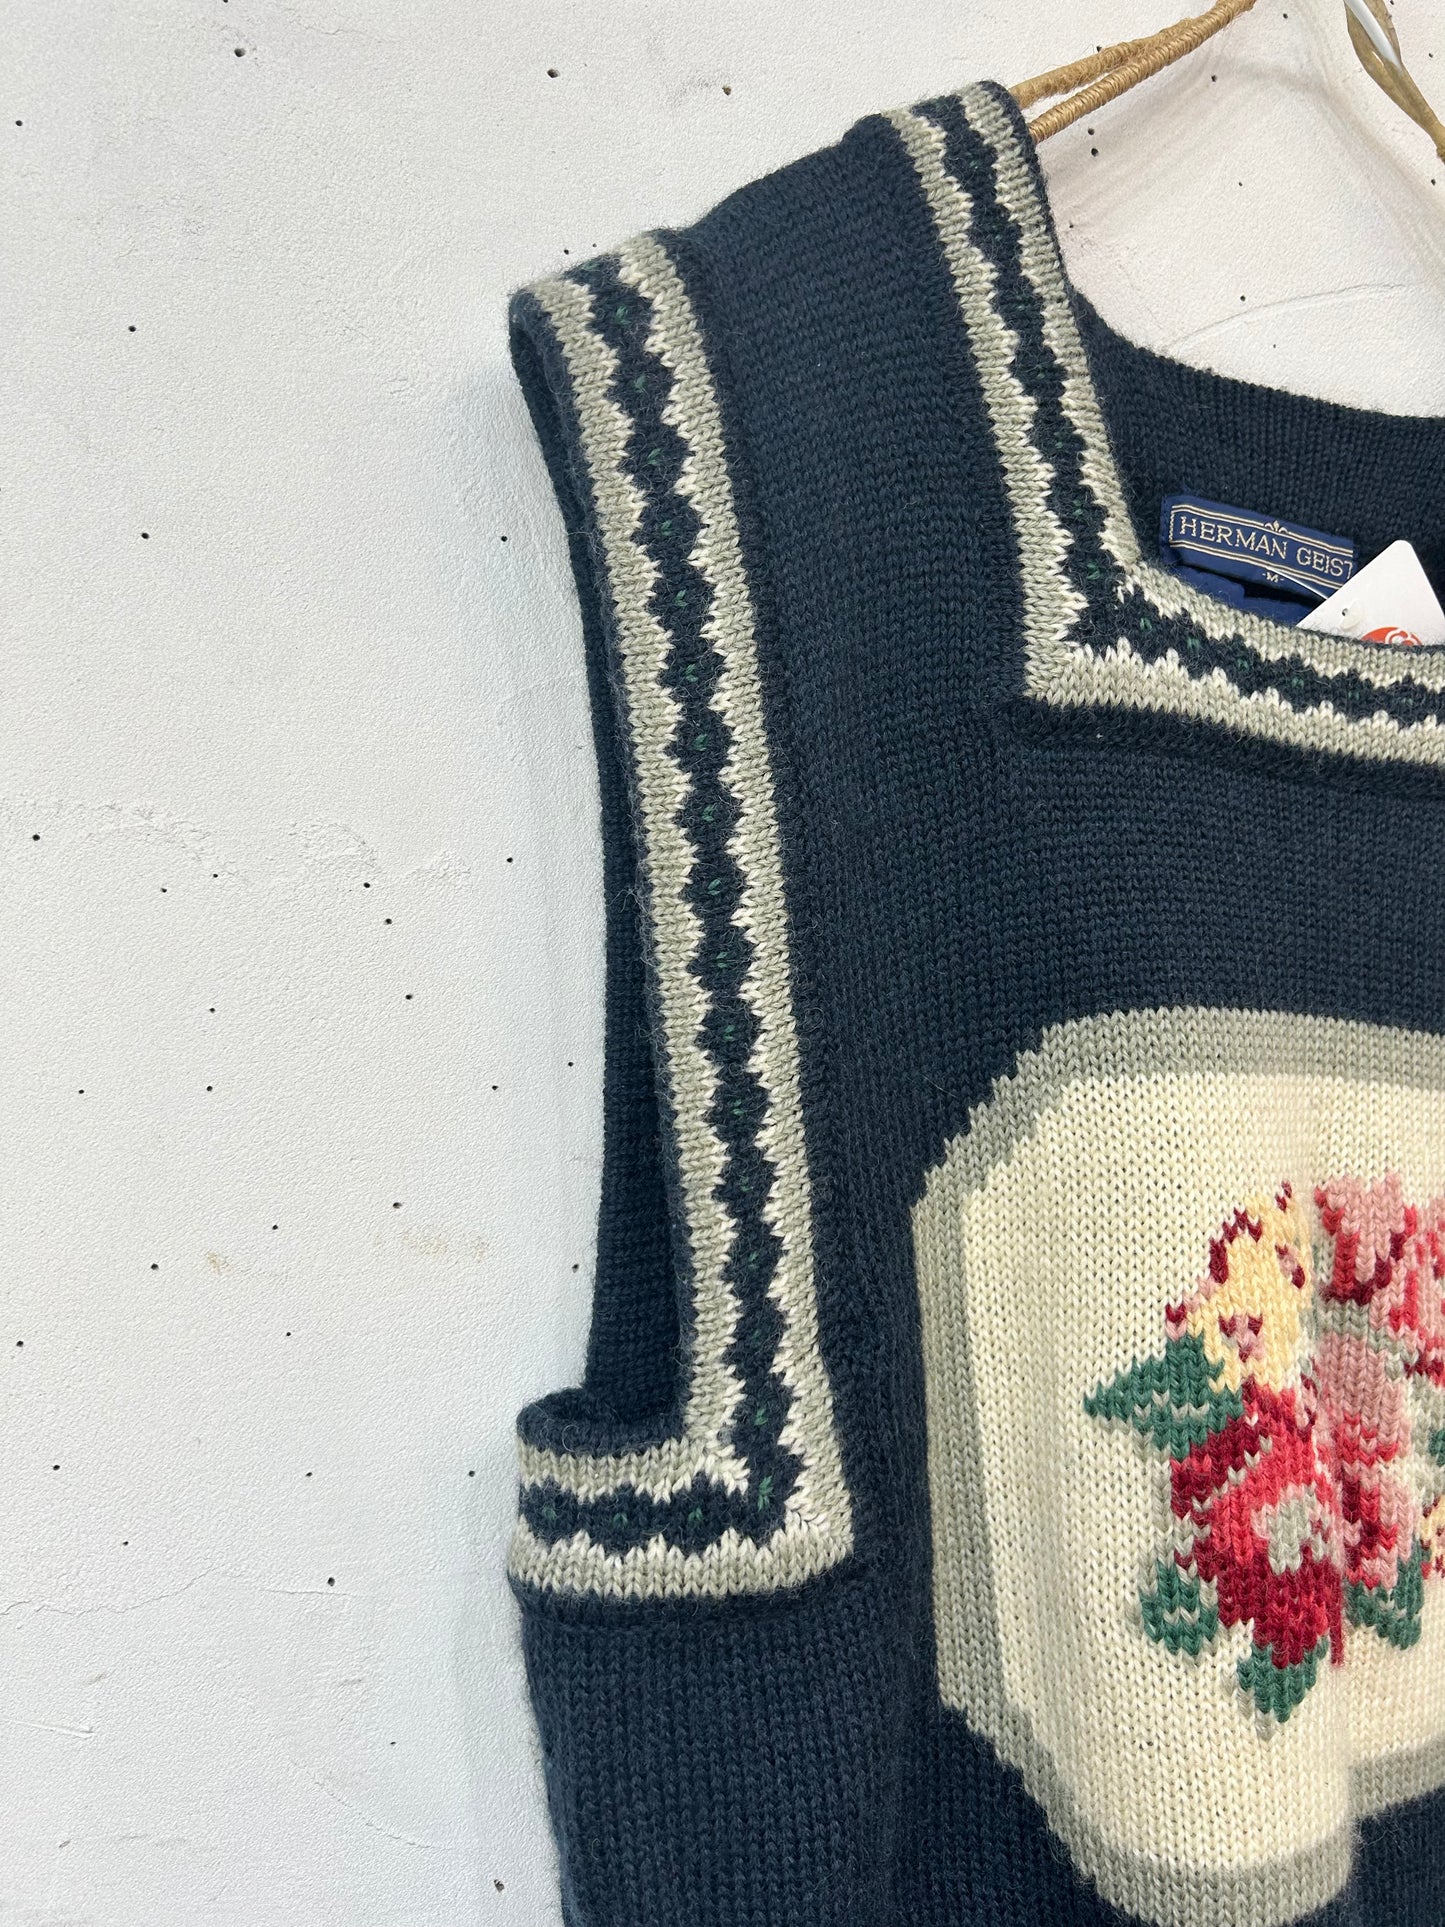 Vintage Hand Embroidered Knit Vest [B26182]